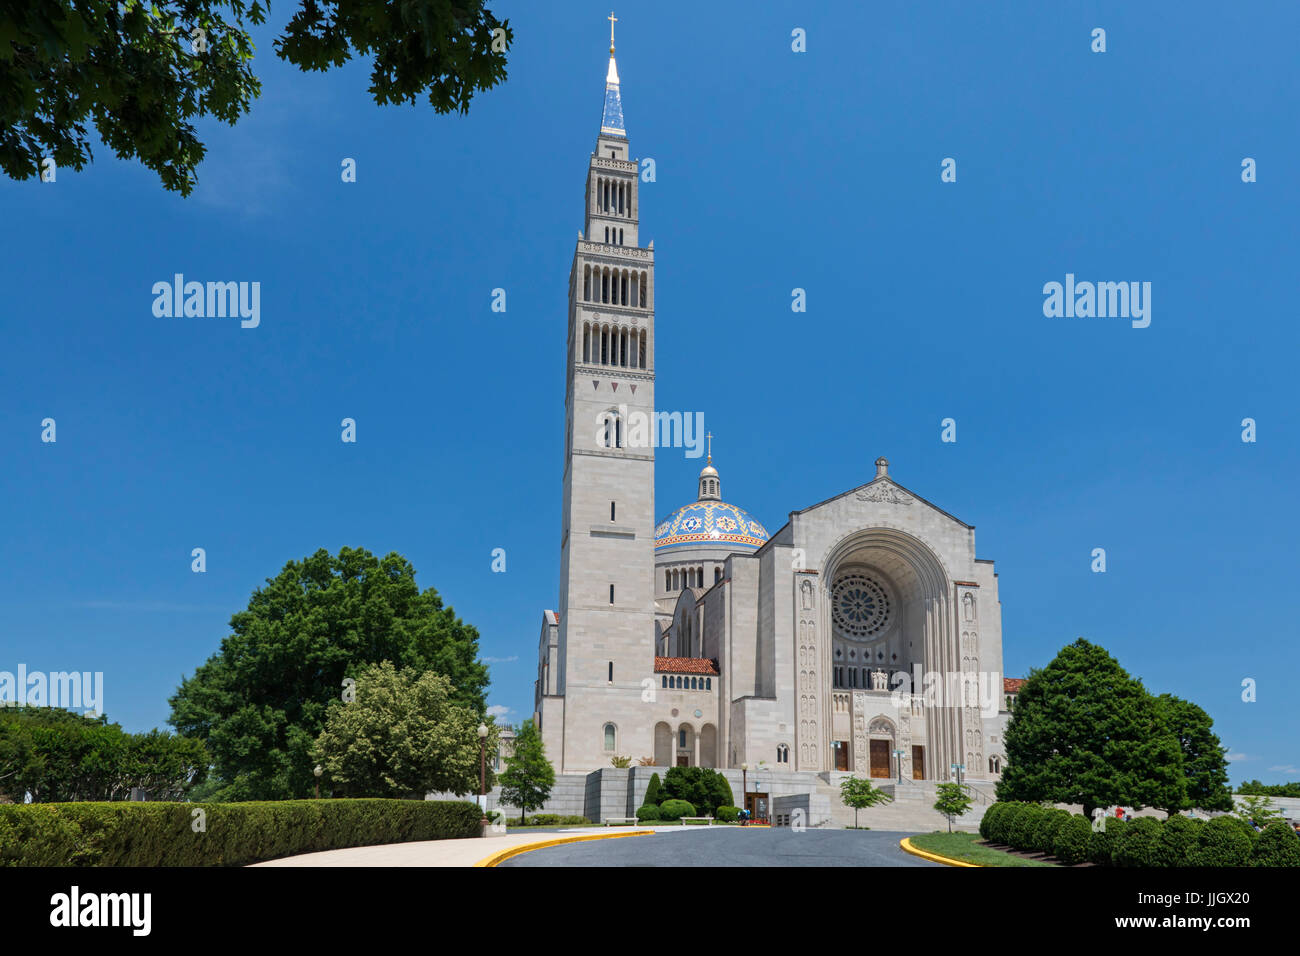 Washington, DC - La Basilica del Santuario Nazionale dell Immacolata Concezione. È la più grande chiesa cattolica romana in Nord America. Foto Stock